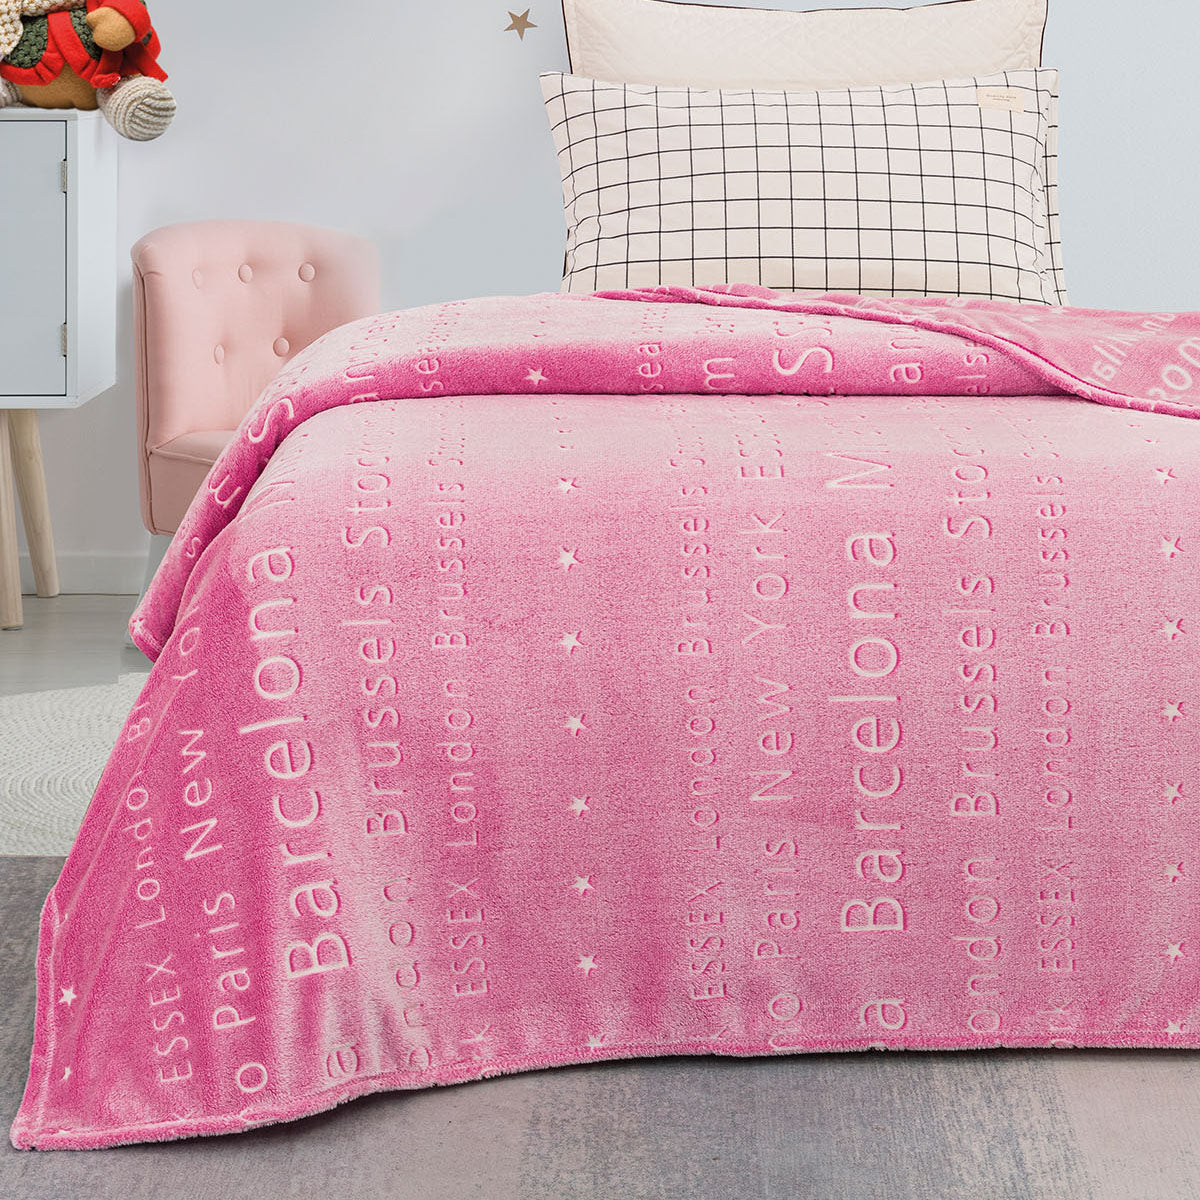 Κουβέρτα μονή φωσφορίζουσα Art 6134  160x220 Ροζ